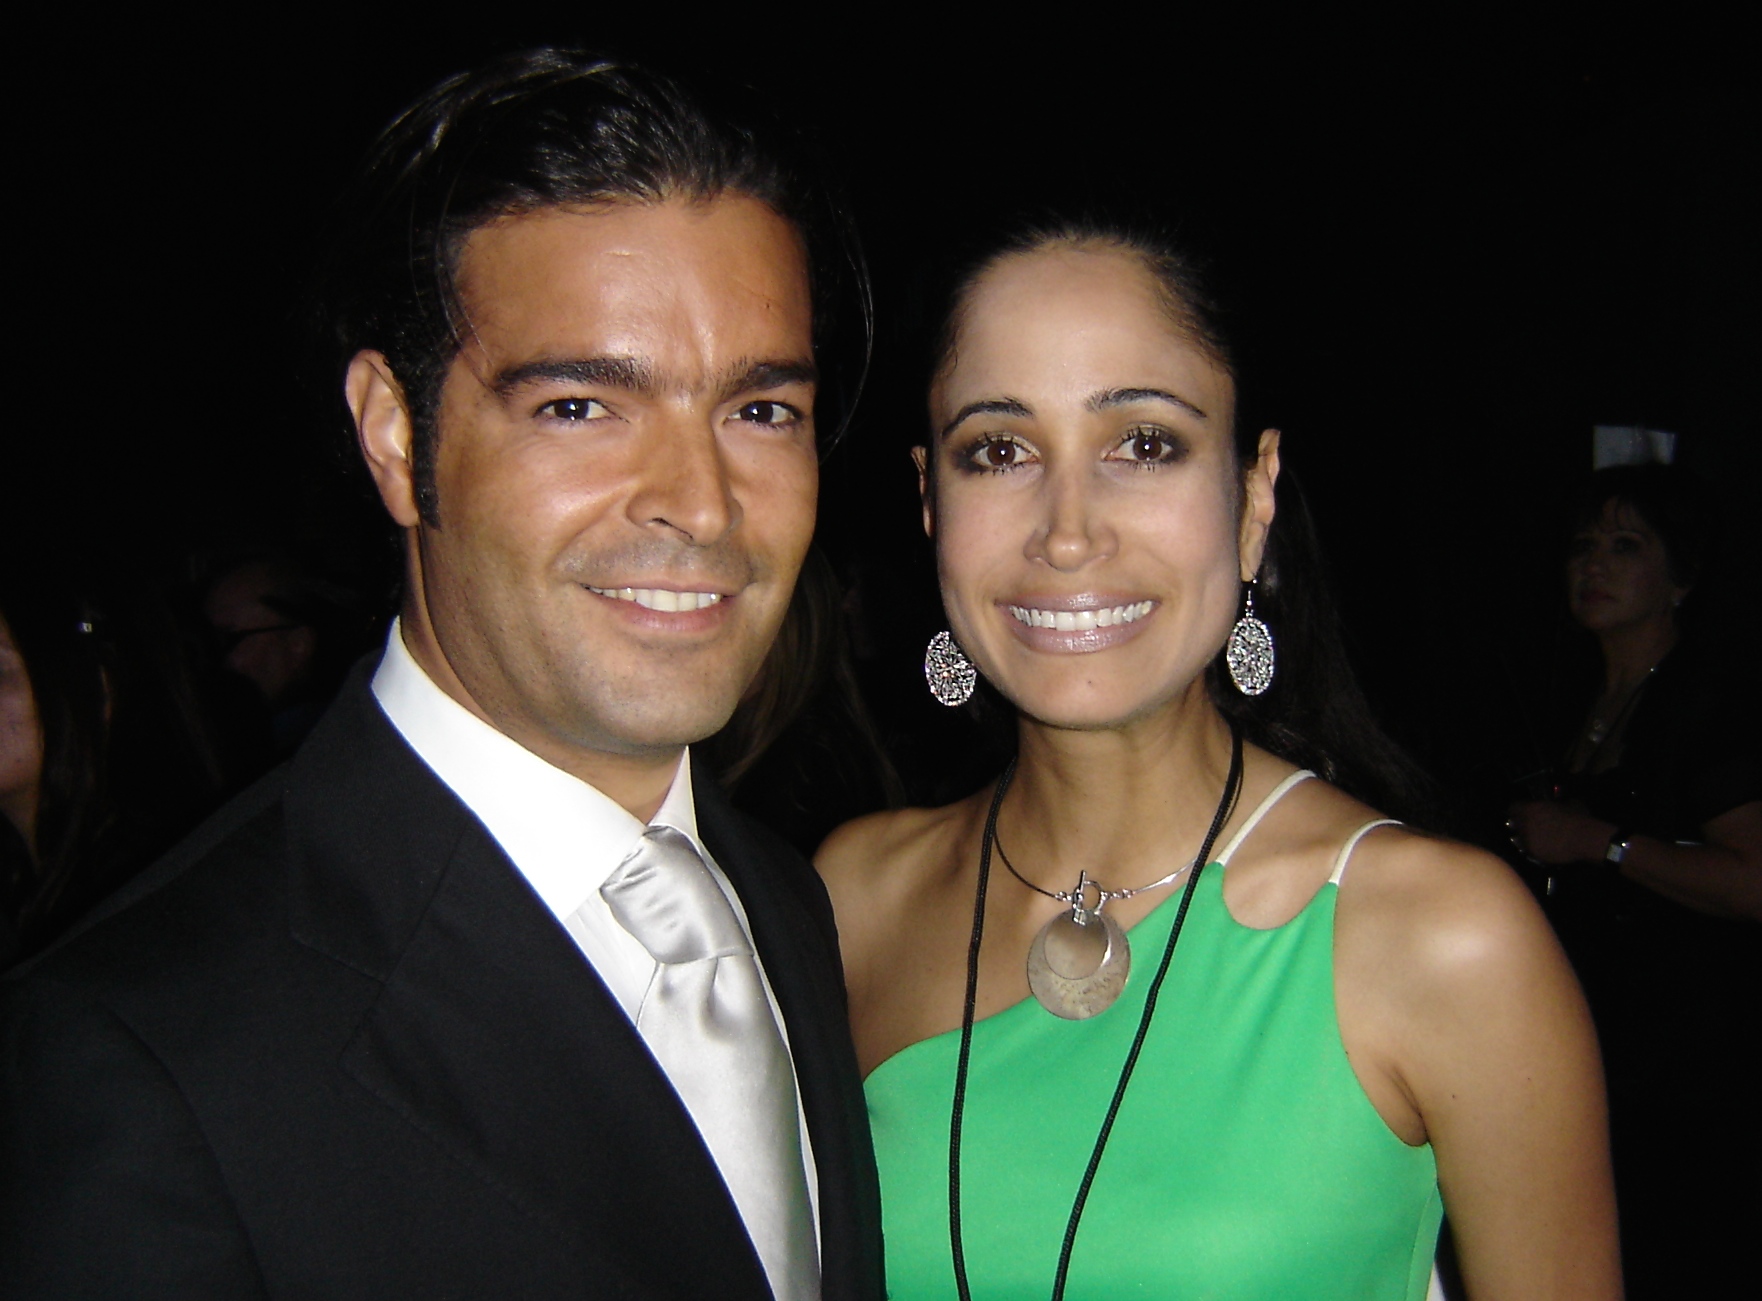 With Latin Singer/Telenovela Star, Pablo Montero at Selena's Tribute Gala in Houston, TX.